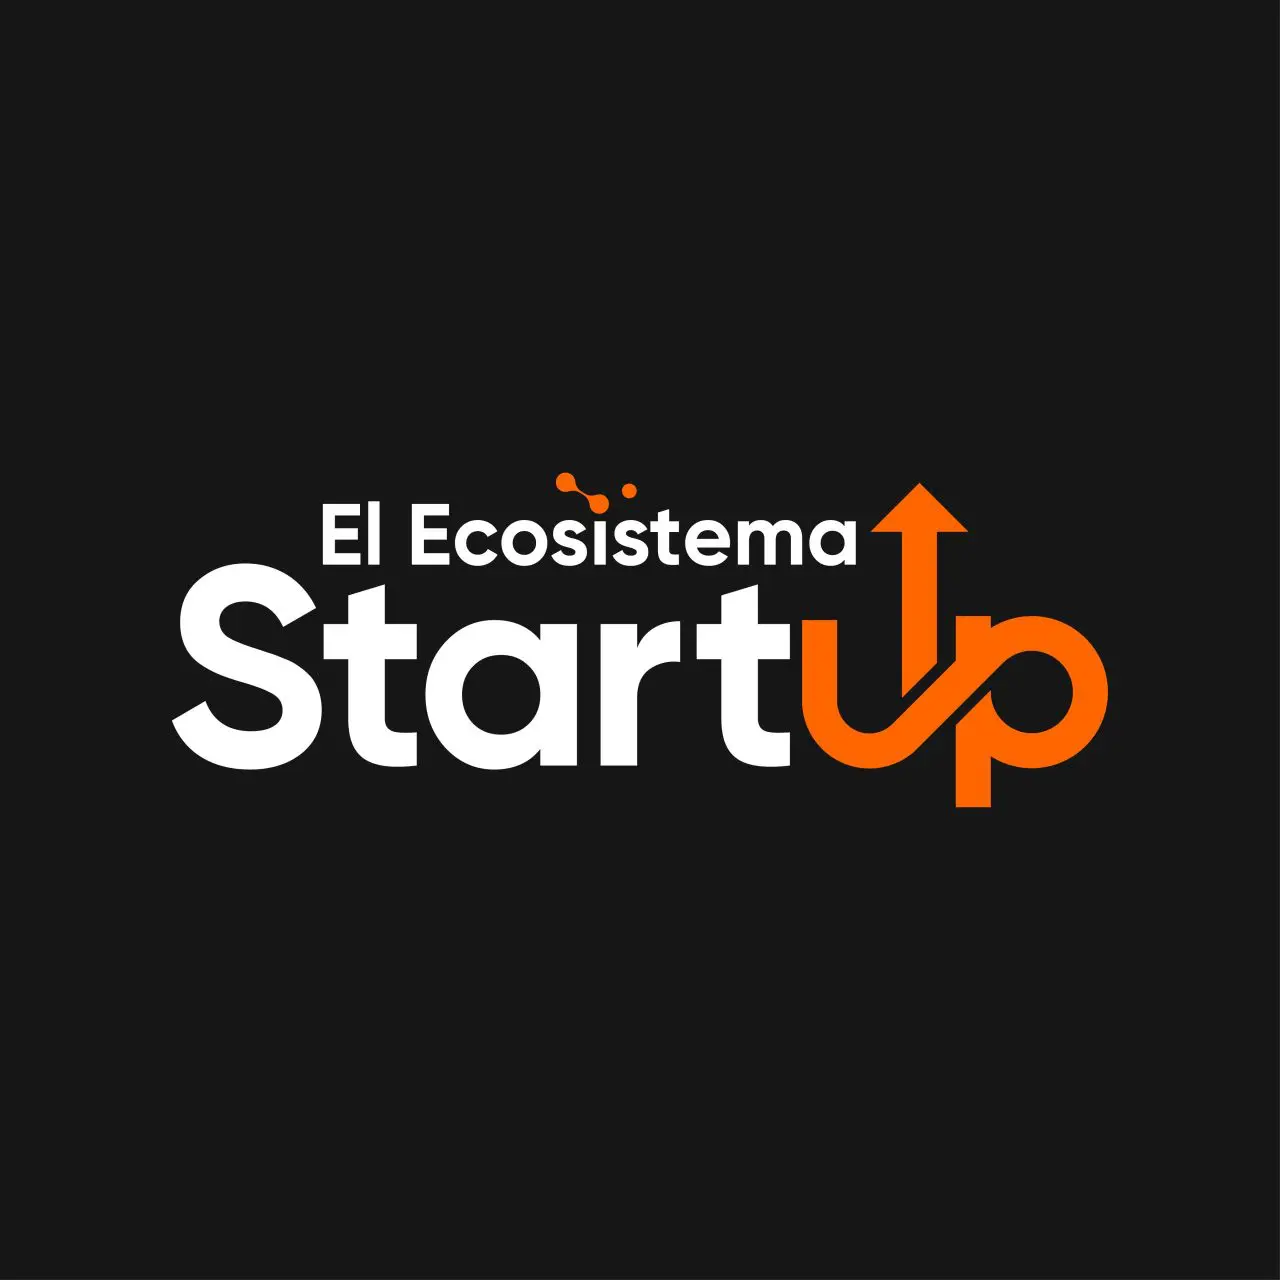 El Ecosistema Startup